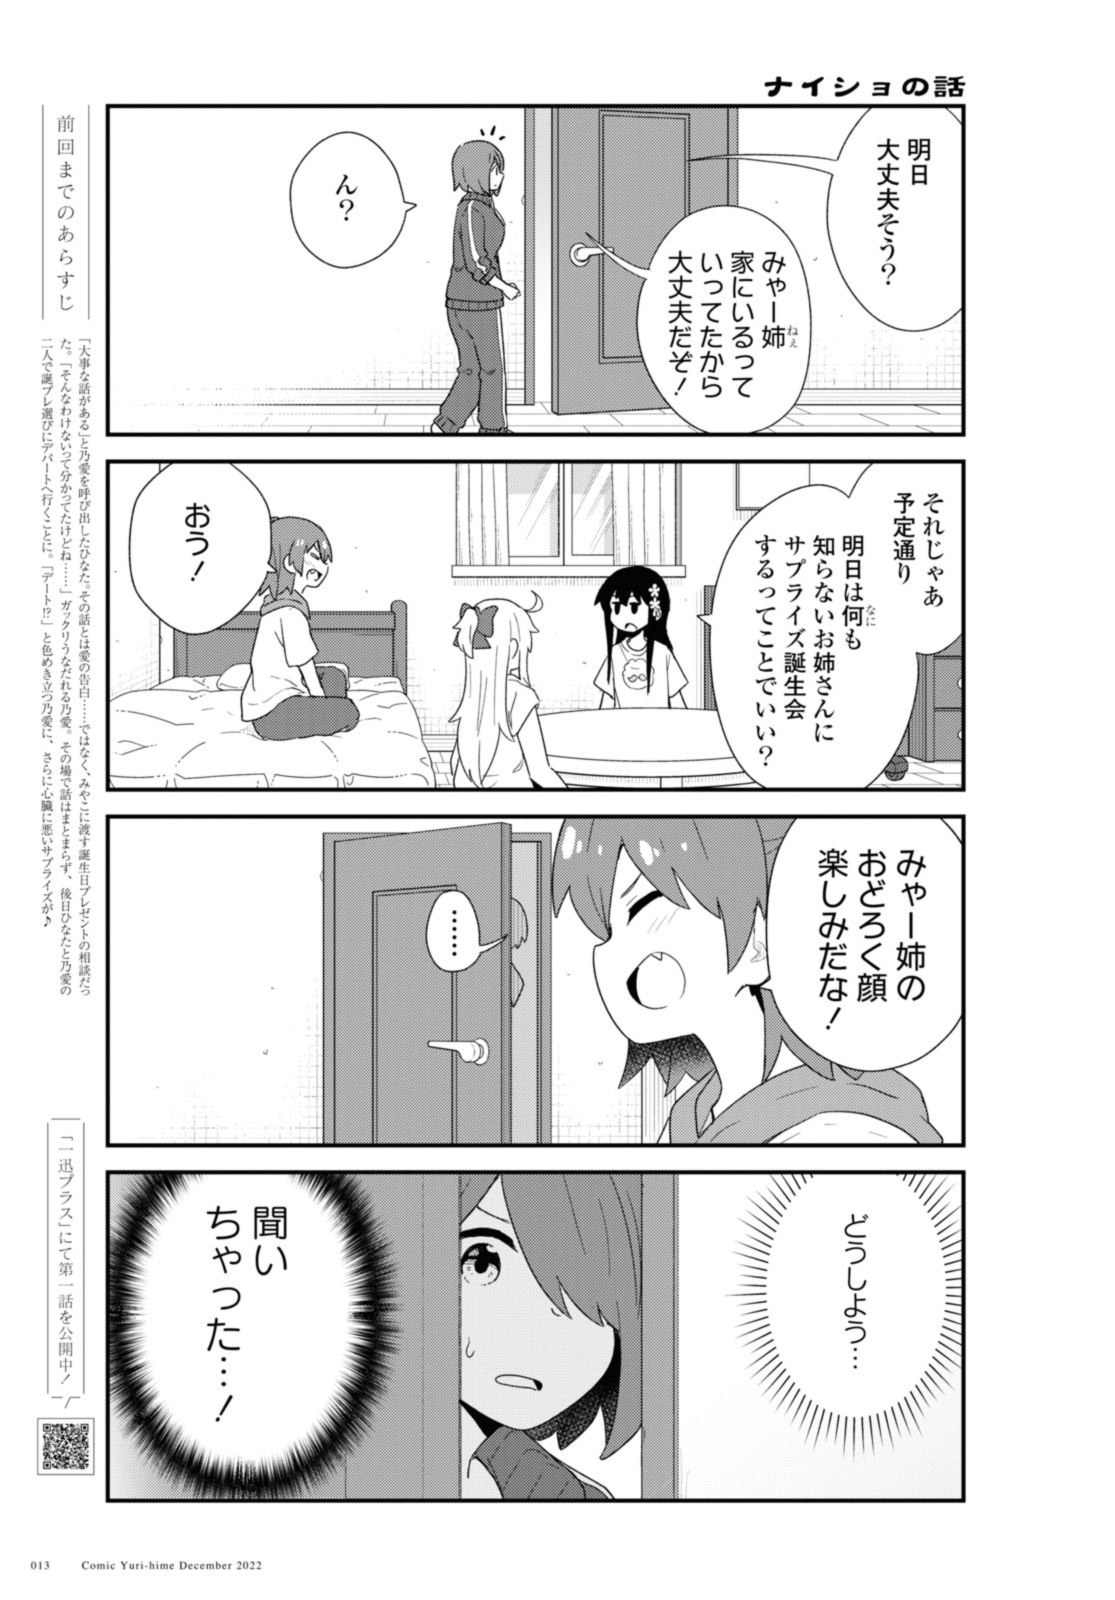 Watashi ni Tenshi ga Maiorita! - Chapter 100.1 - Page 5